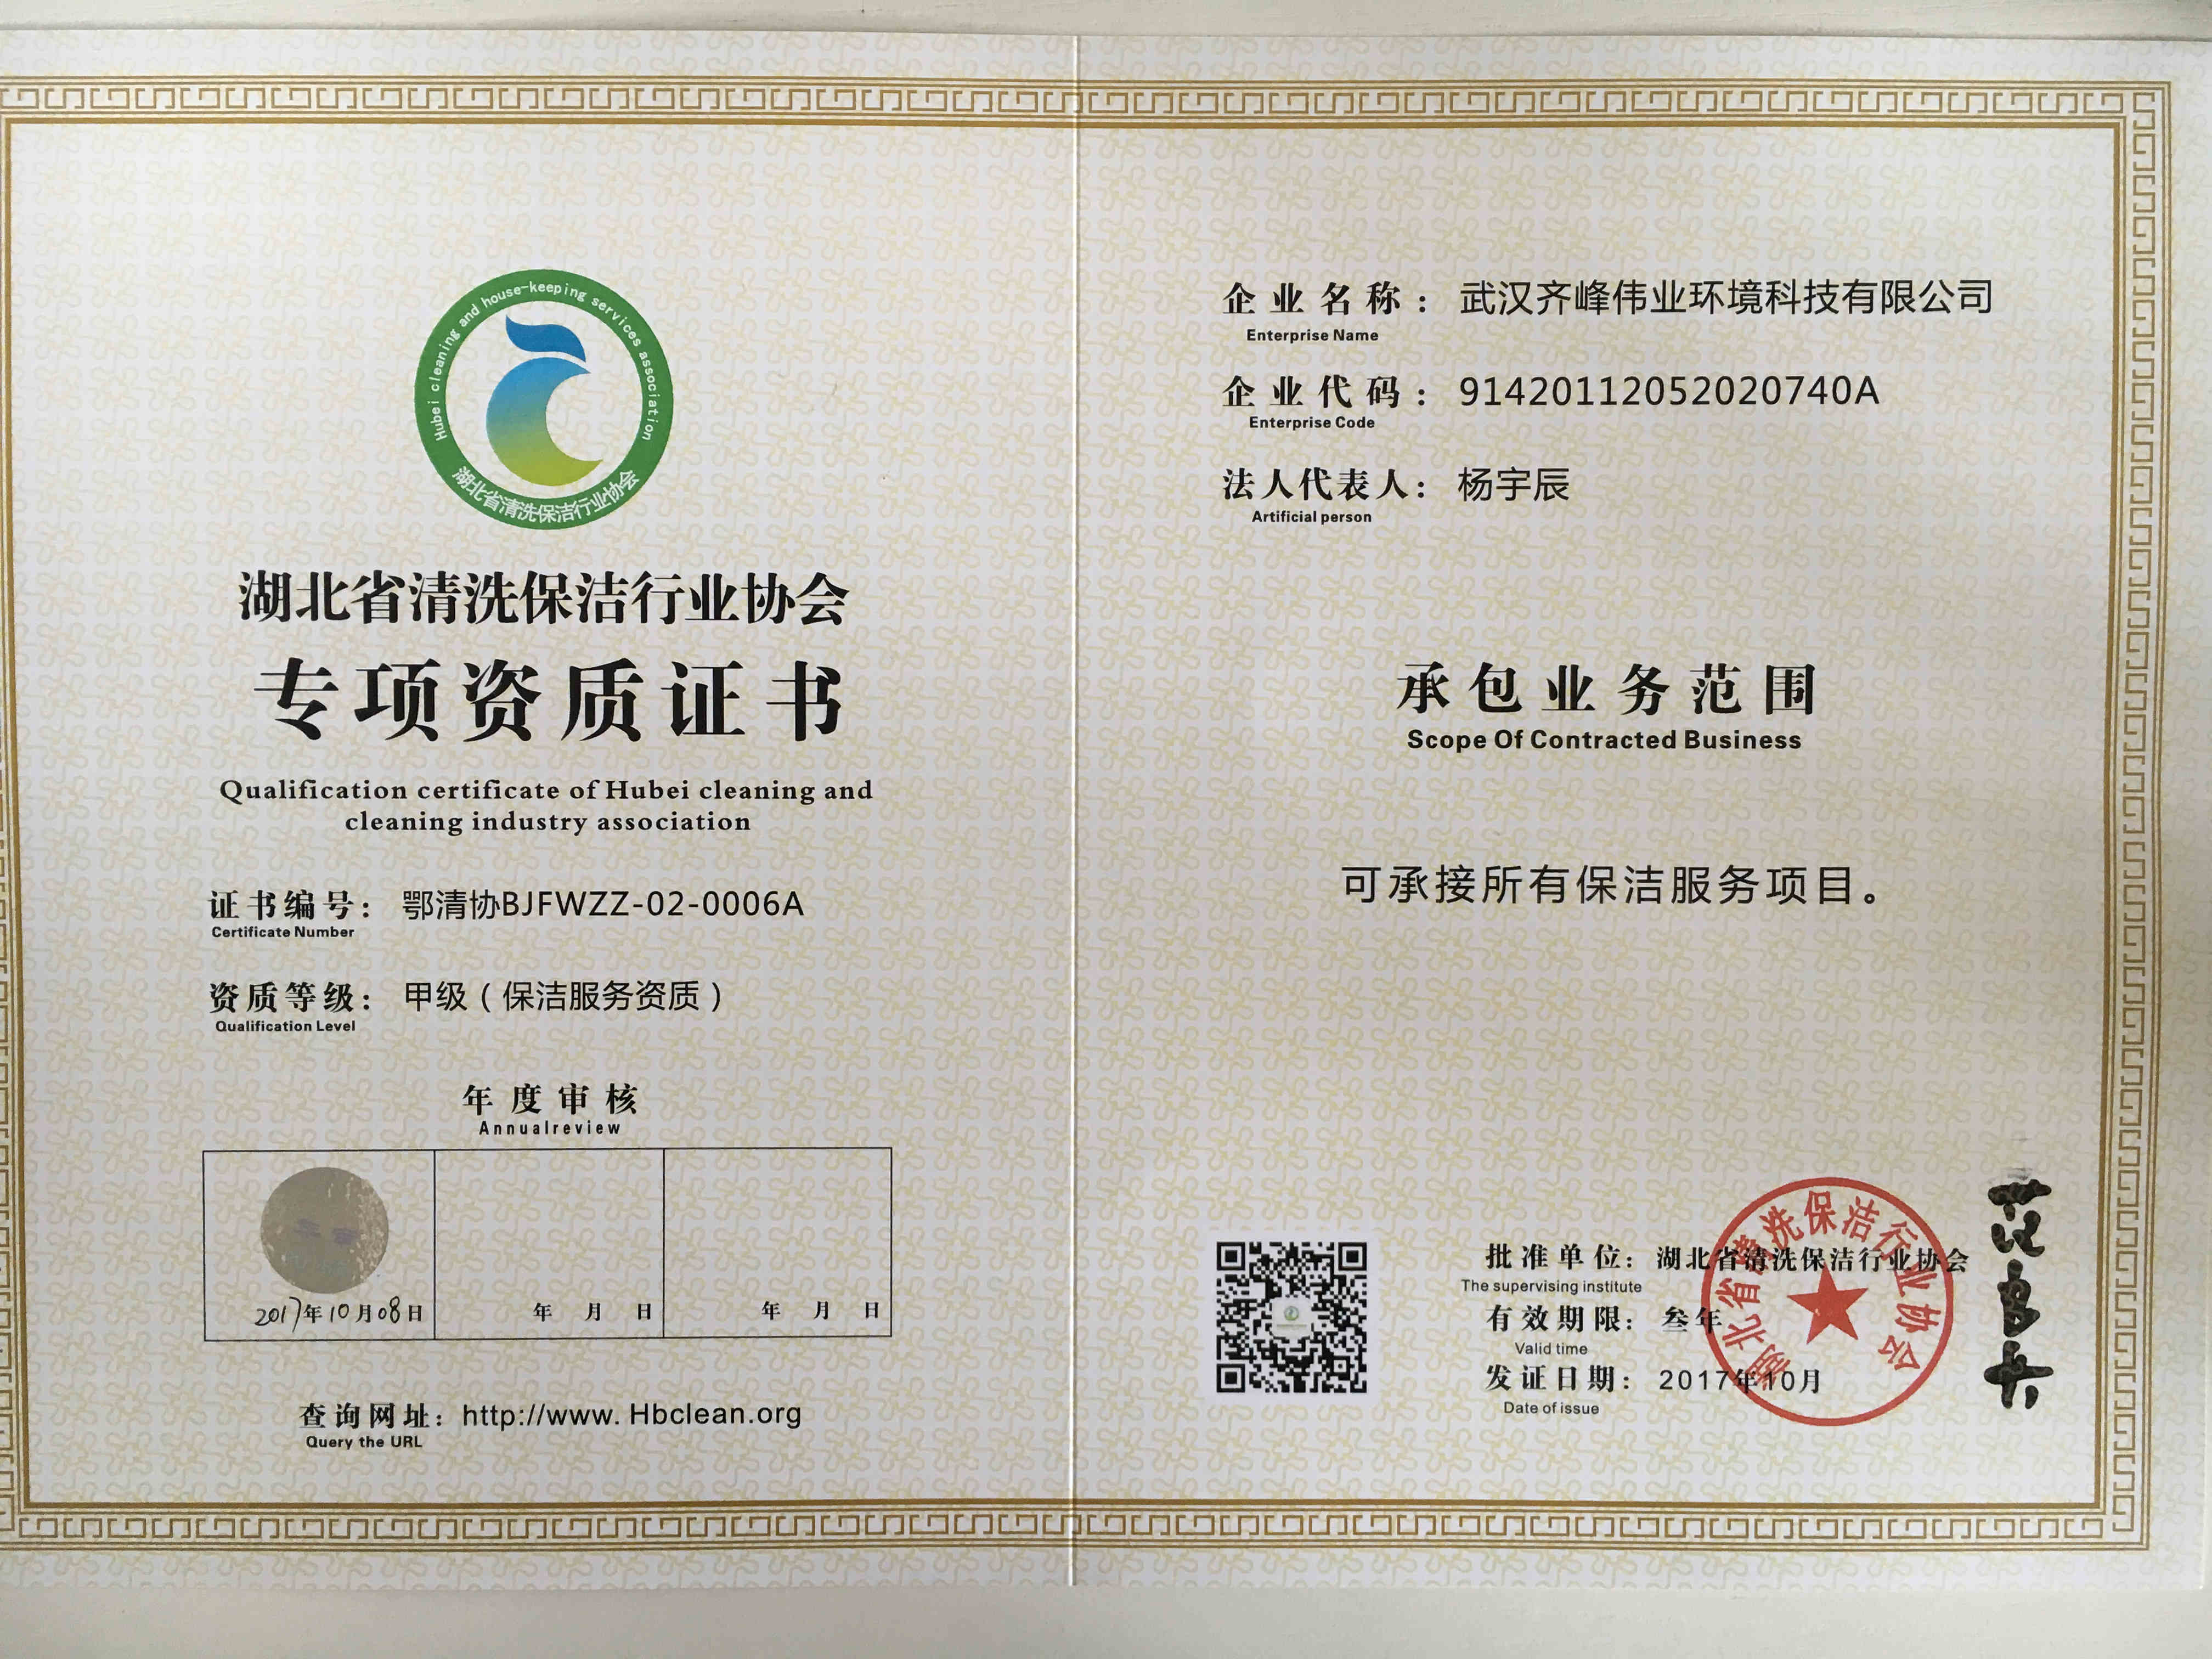 湖北省清洗保洁行业协会甲级保洁服务资质证书